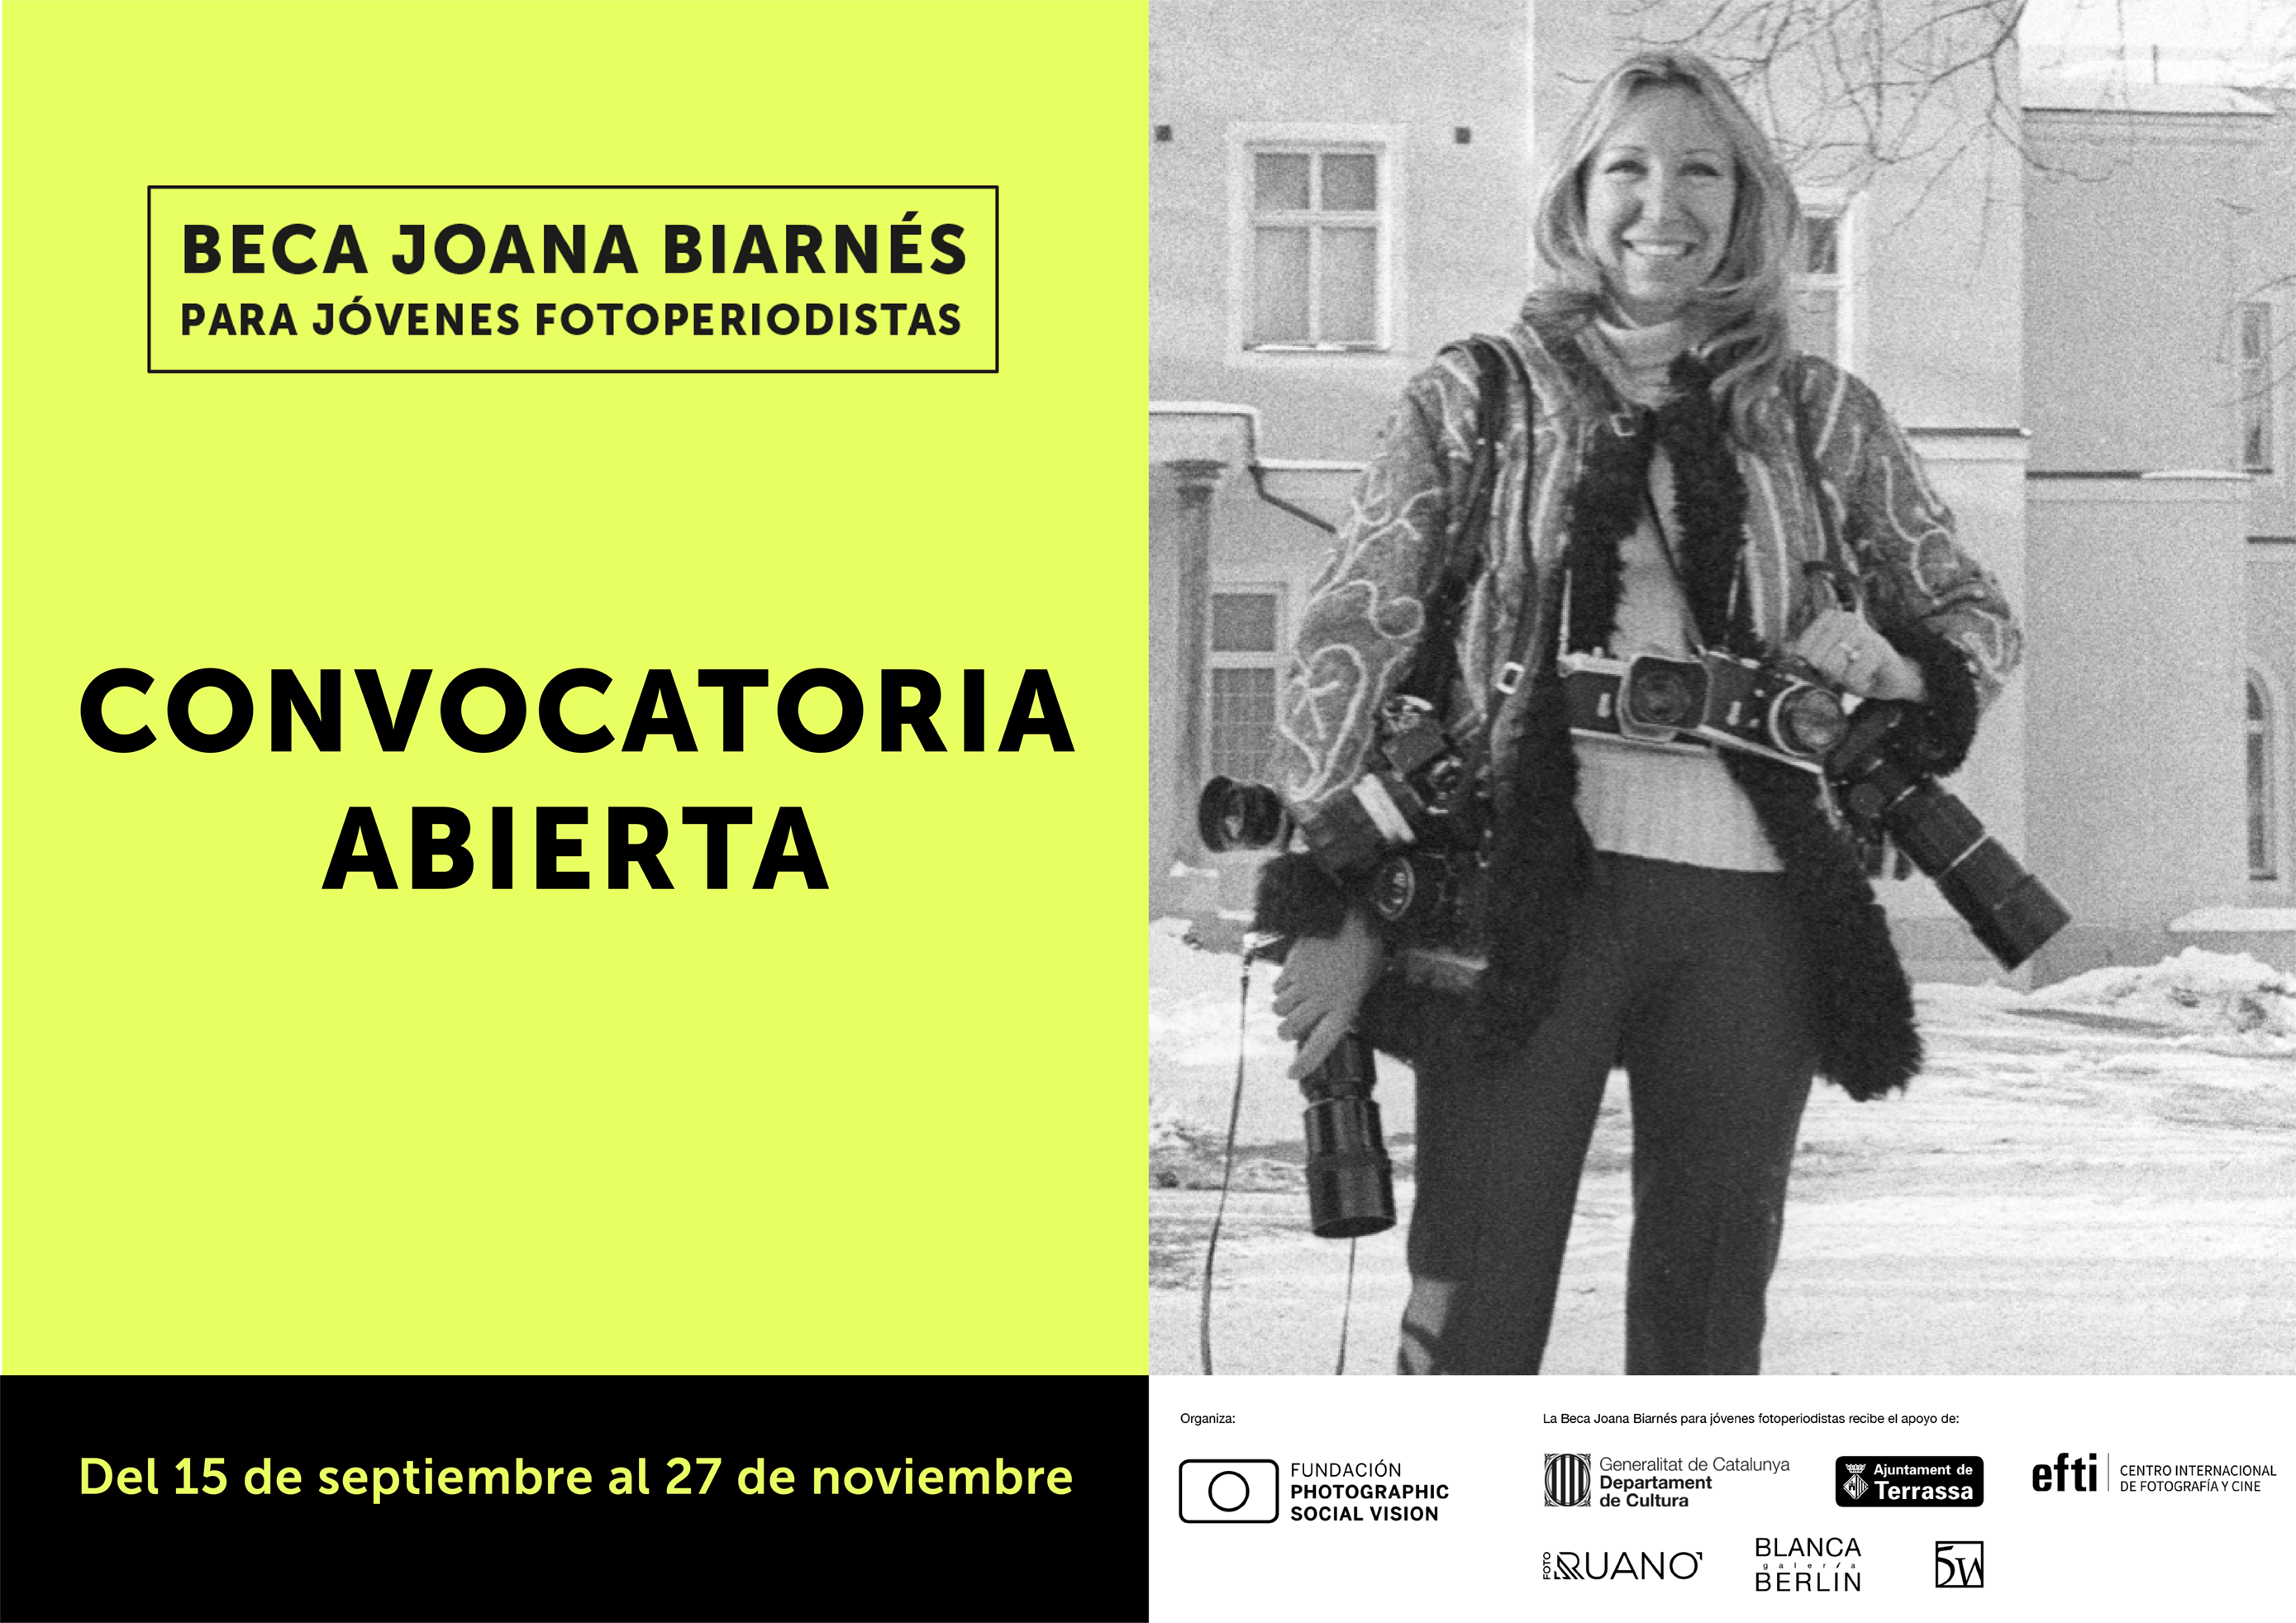 Beca Joana Biarnés: fomentando el futuro del Fotoperiodismo